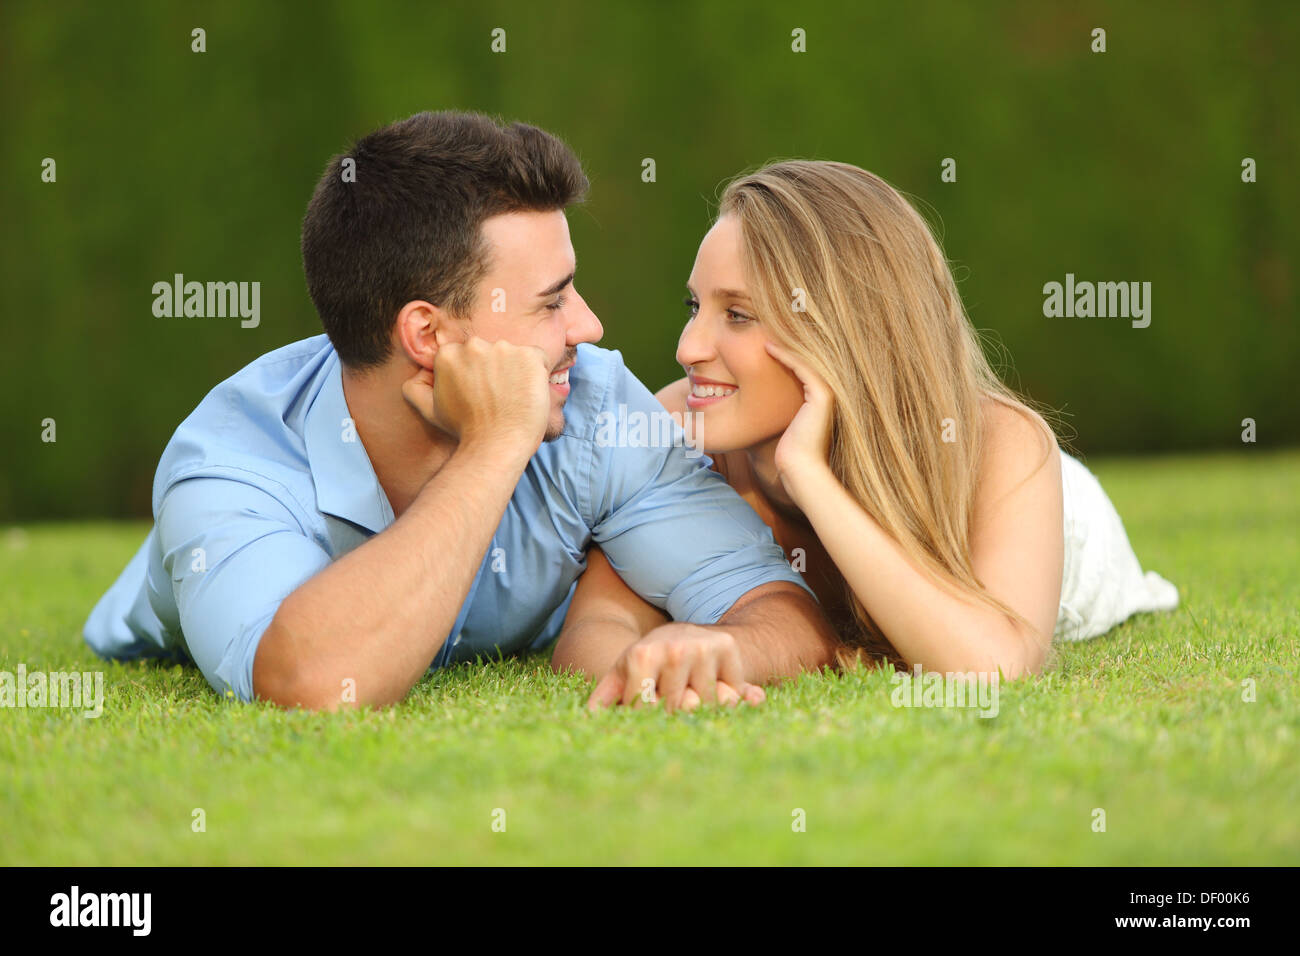 Couple in love dating et à chaque autre couché dans l'herbe avec un fond vert Banque D'Images